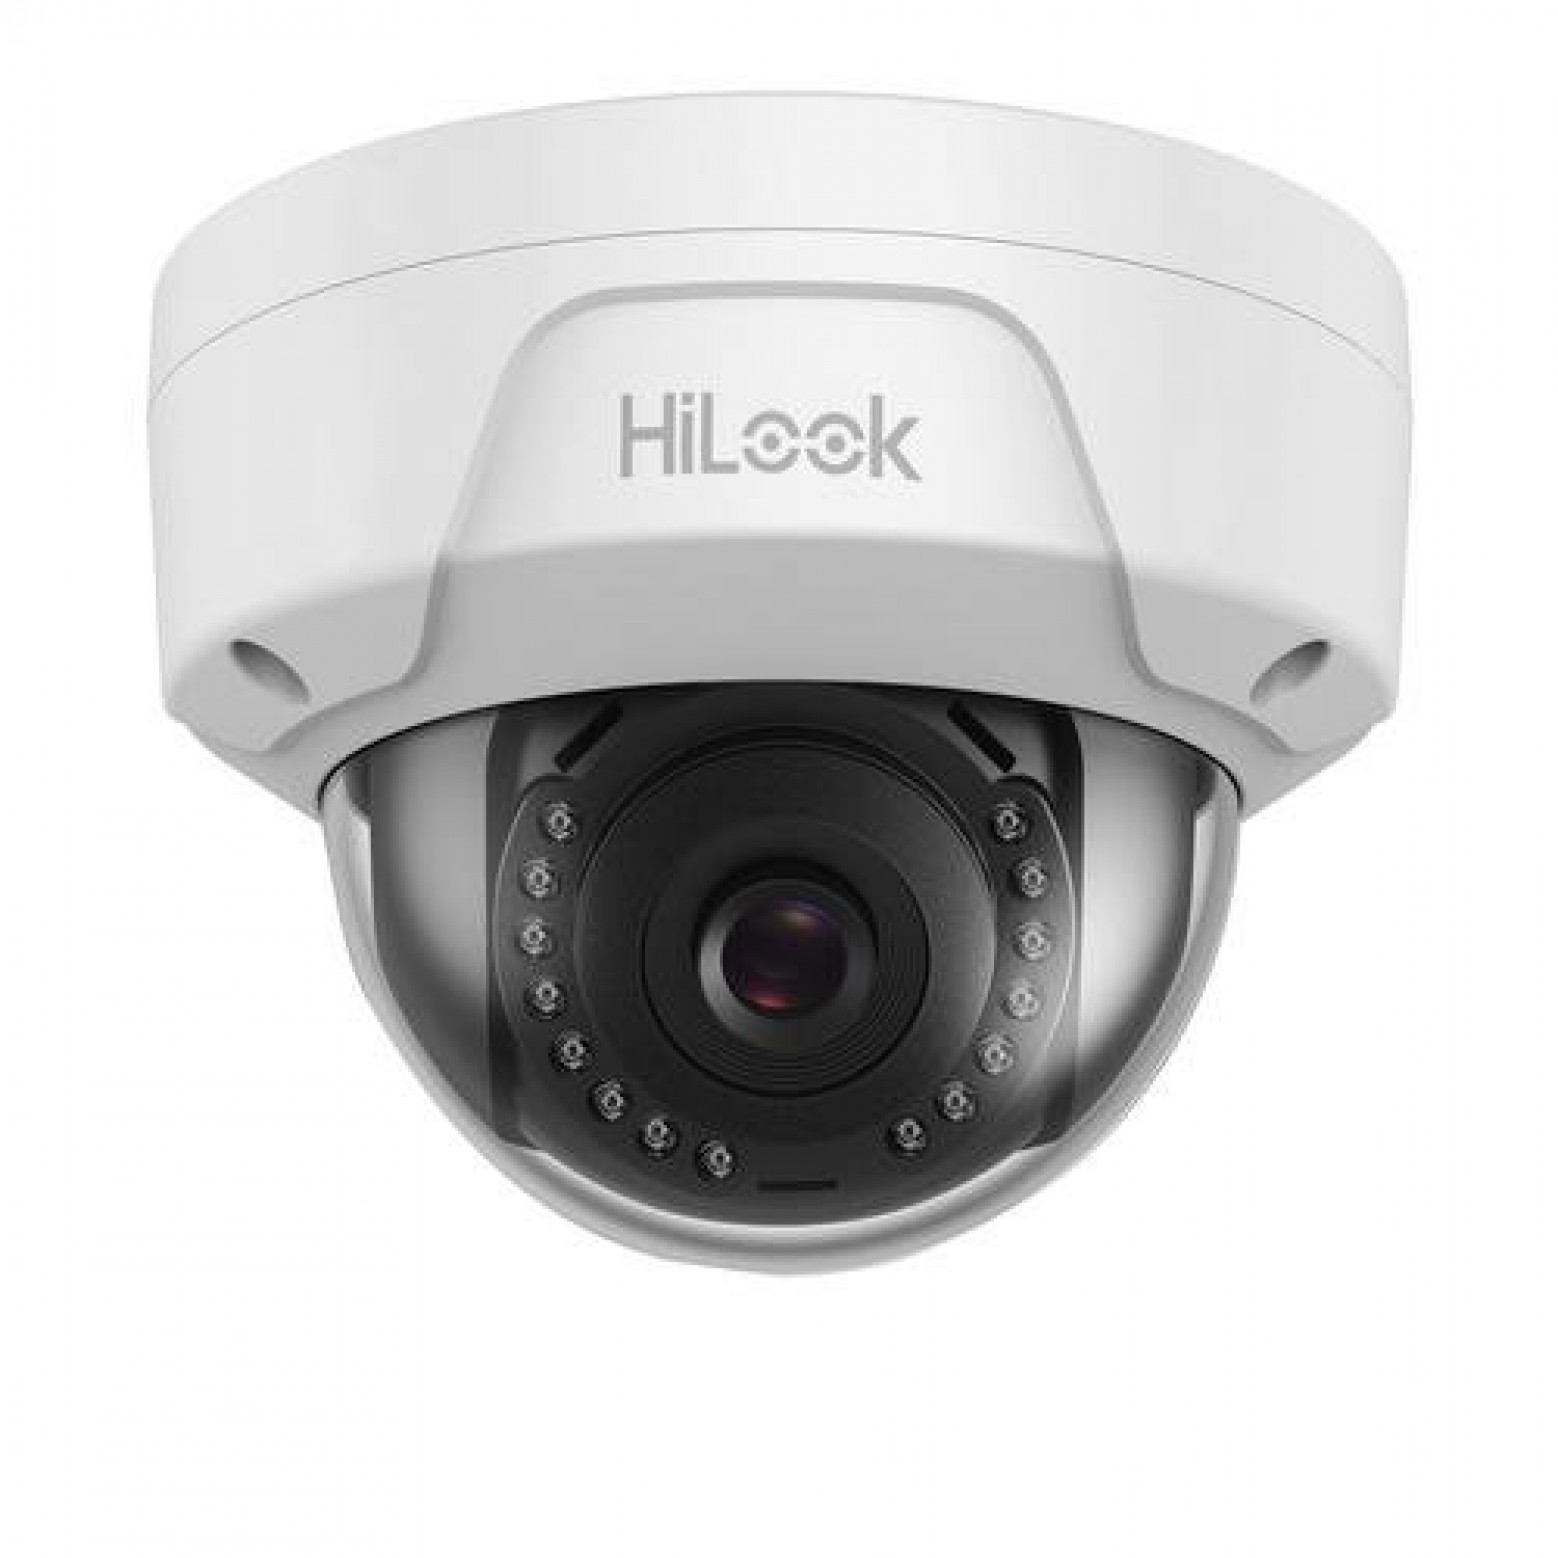 HiLook IPC-D140H 4 Megapixel dome camera